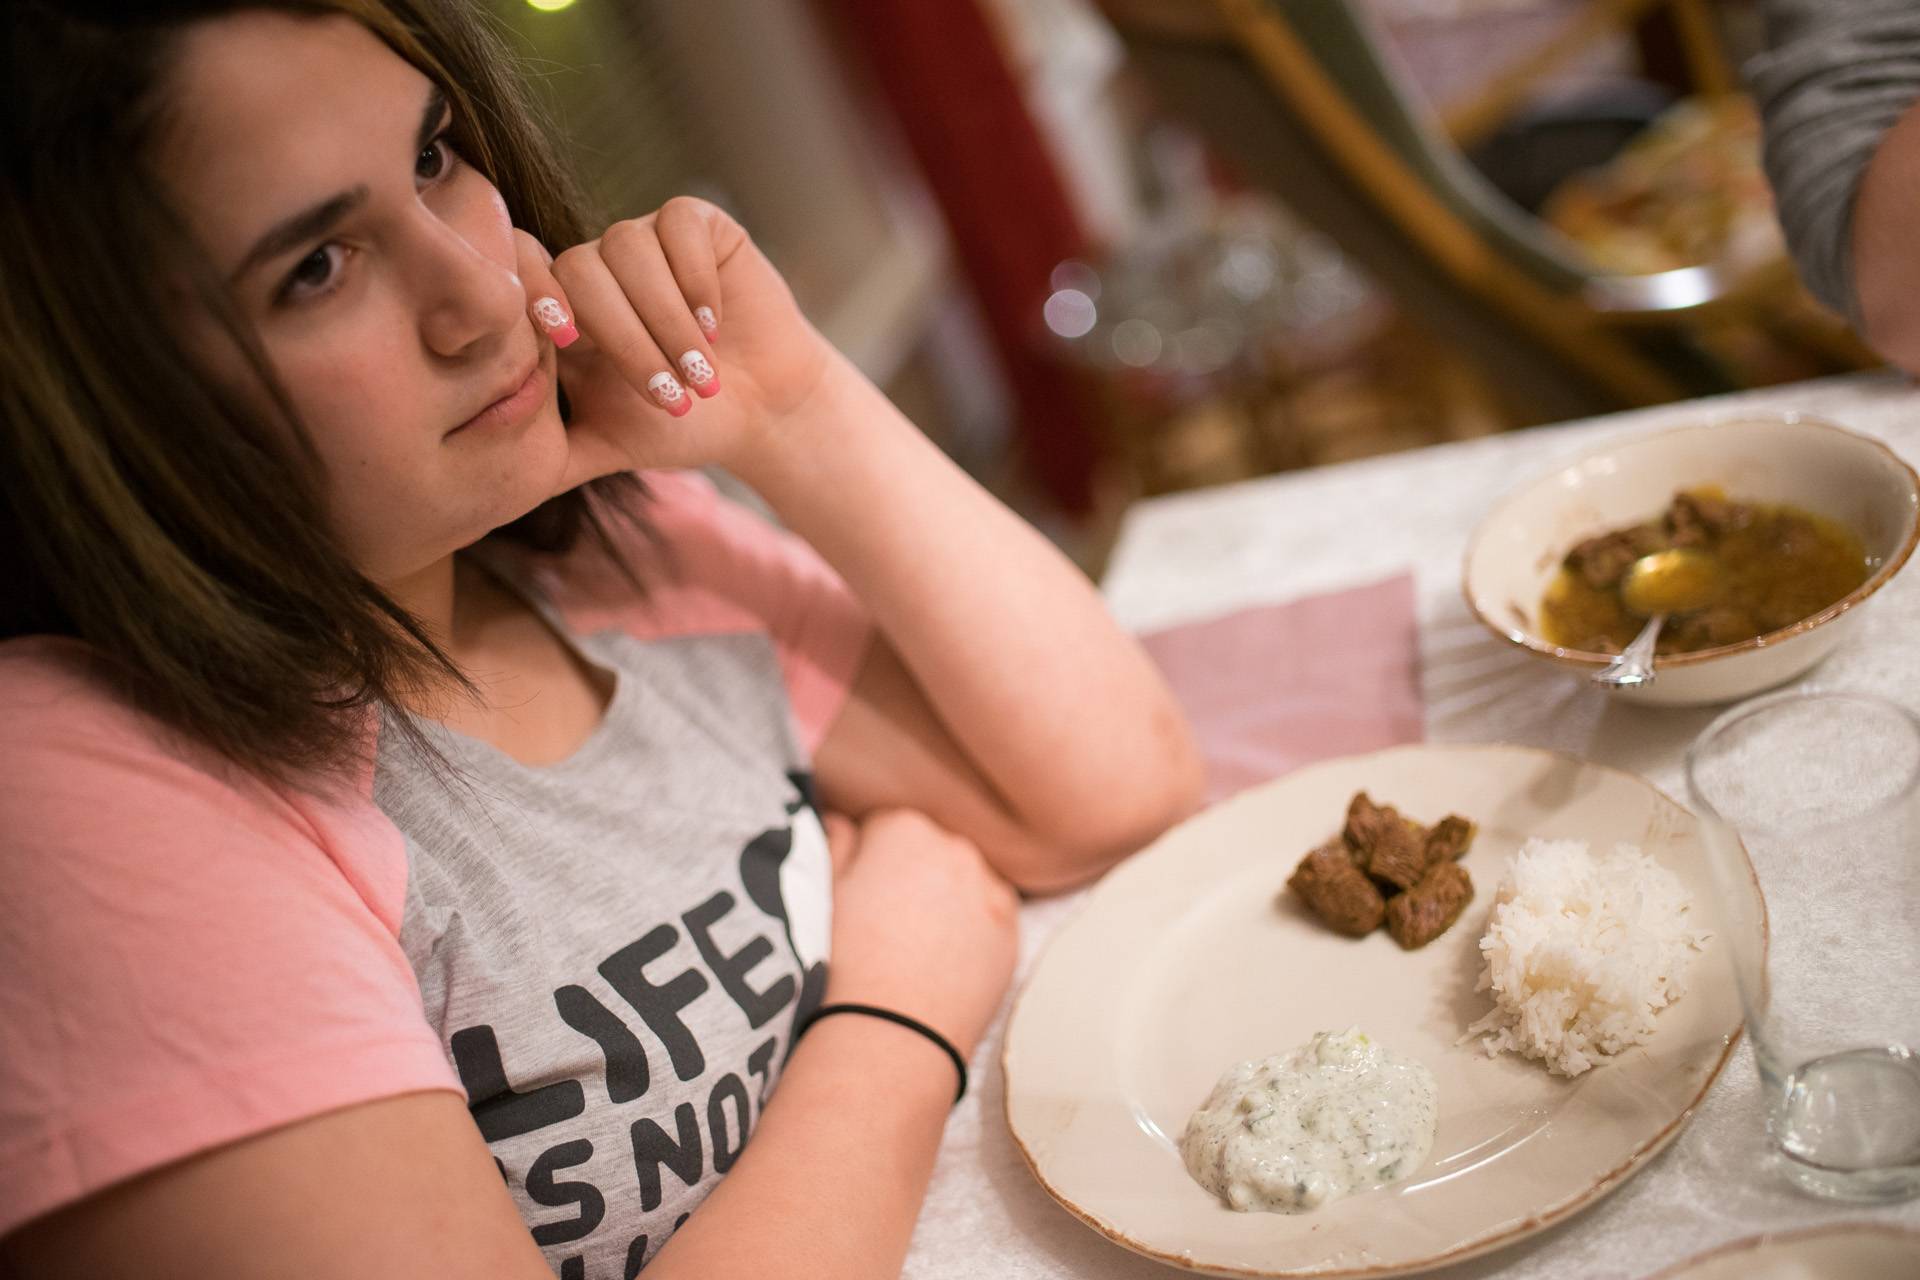 Shirin liker ikkje blanda mat. Ho får maten delt og risen kvit. (Foto: Lars Erik H. Andreassen, NRK)